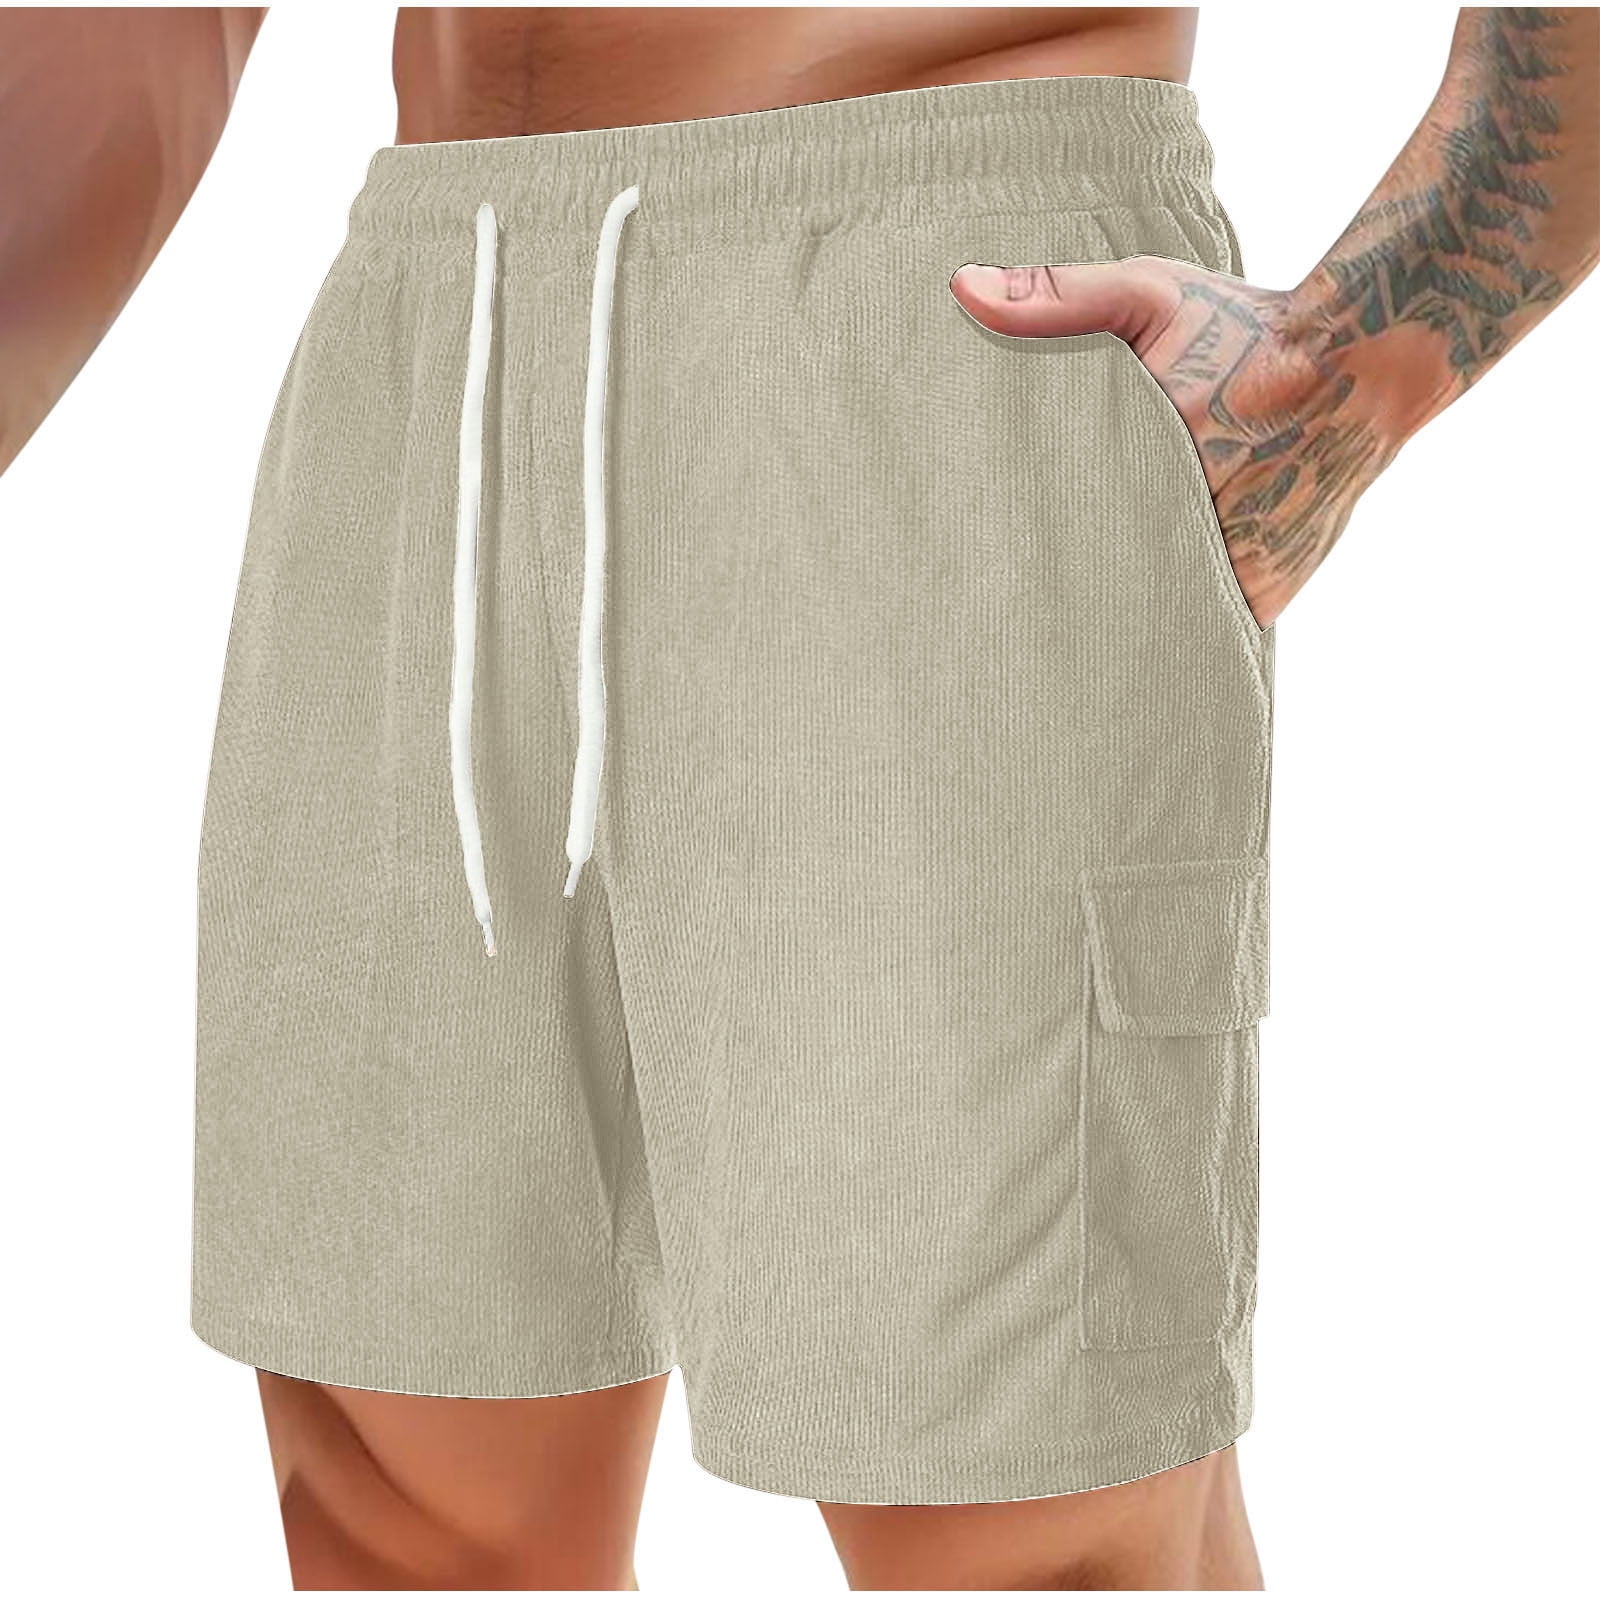 Mens Shorts Summer Savings HBGGGUJ Men's Lace-Up Fitness Shorts ...